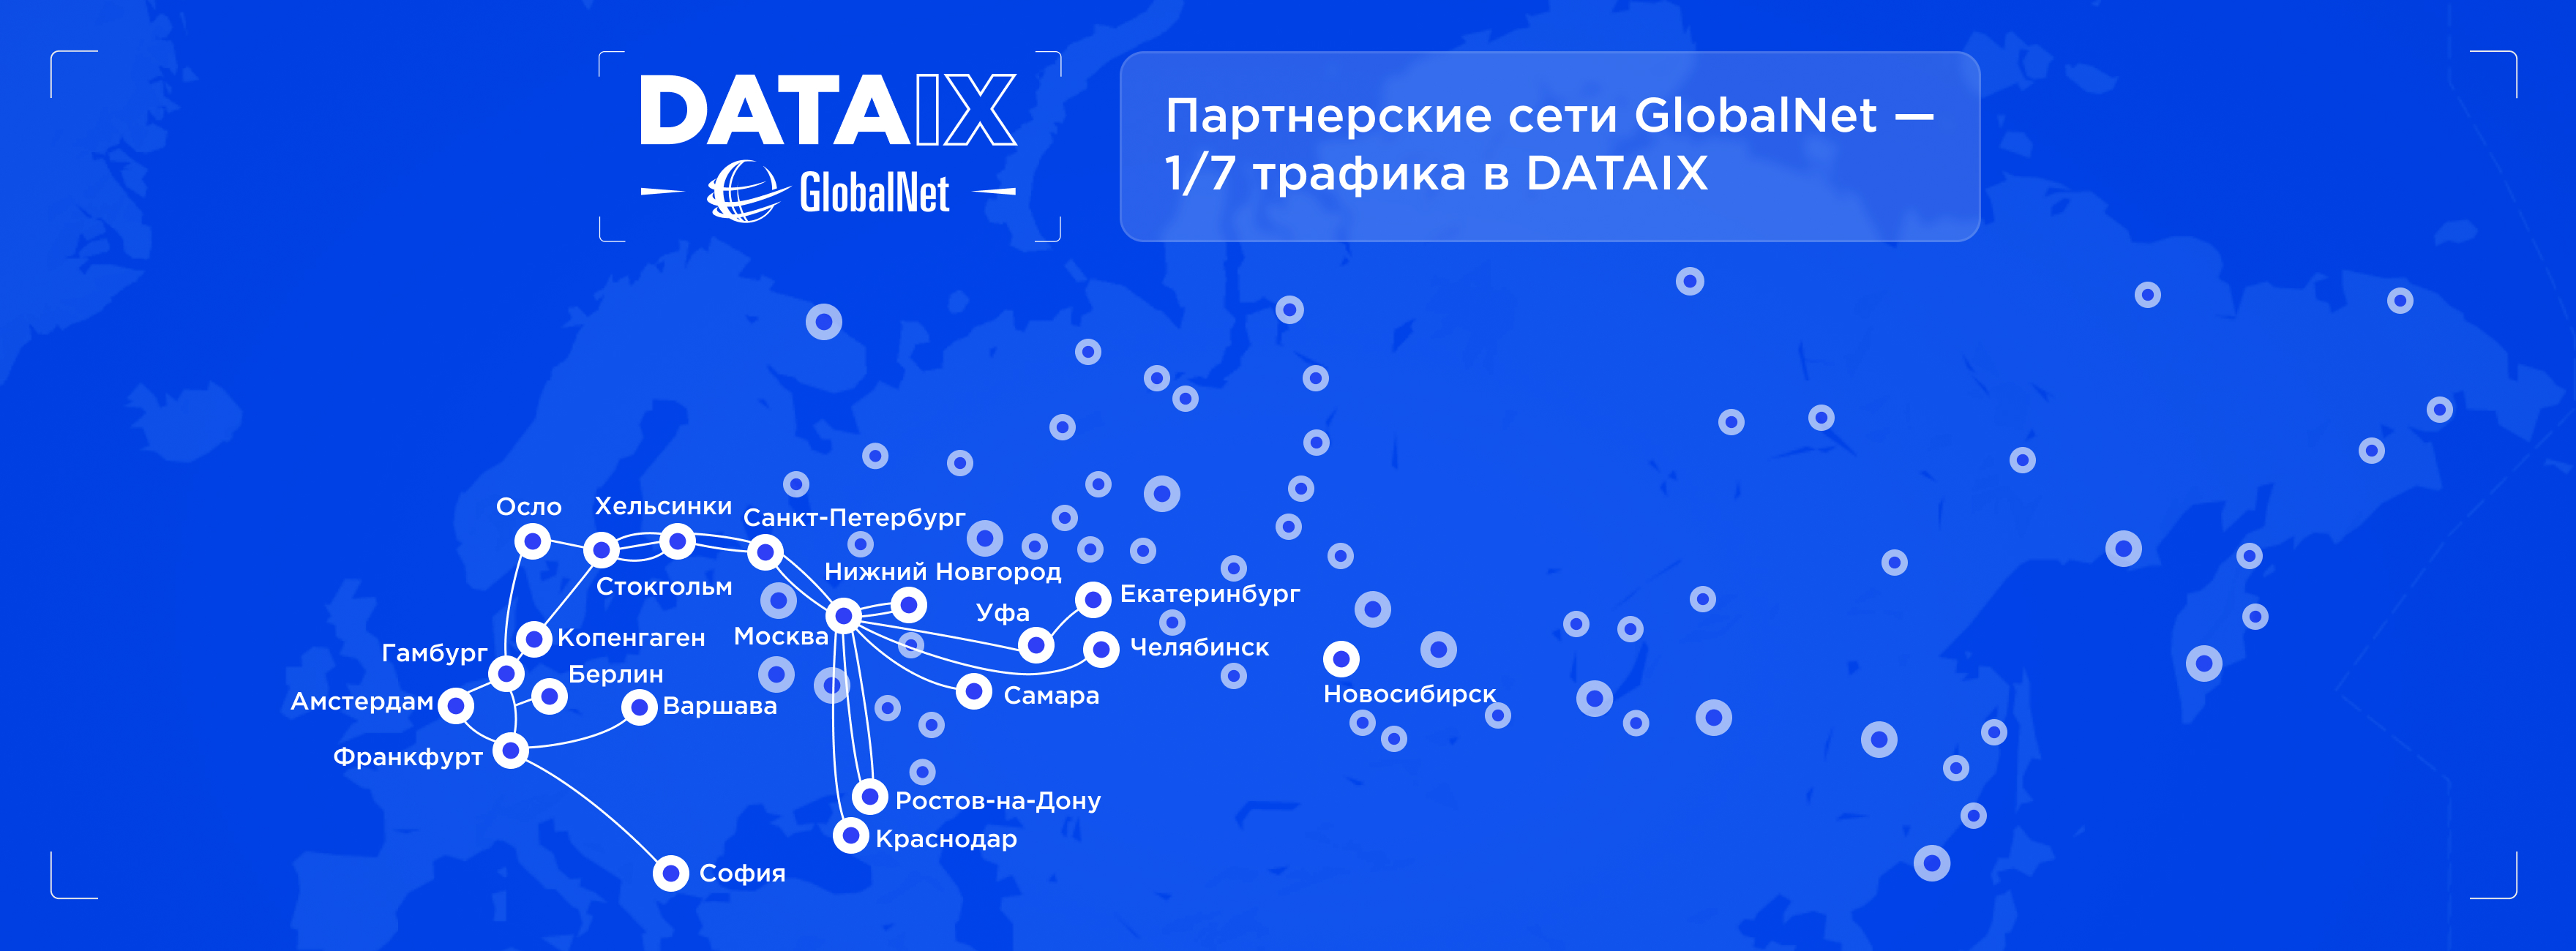 Партнерские сети GlobalNet — 1/7 трафика в DATAIX.